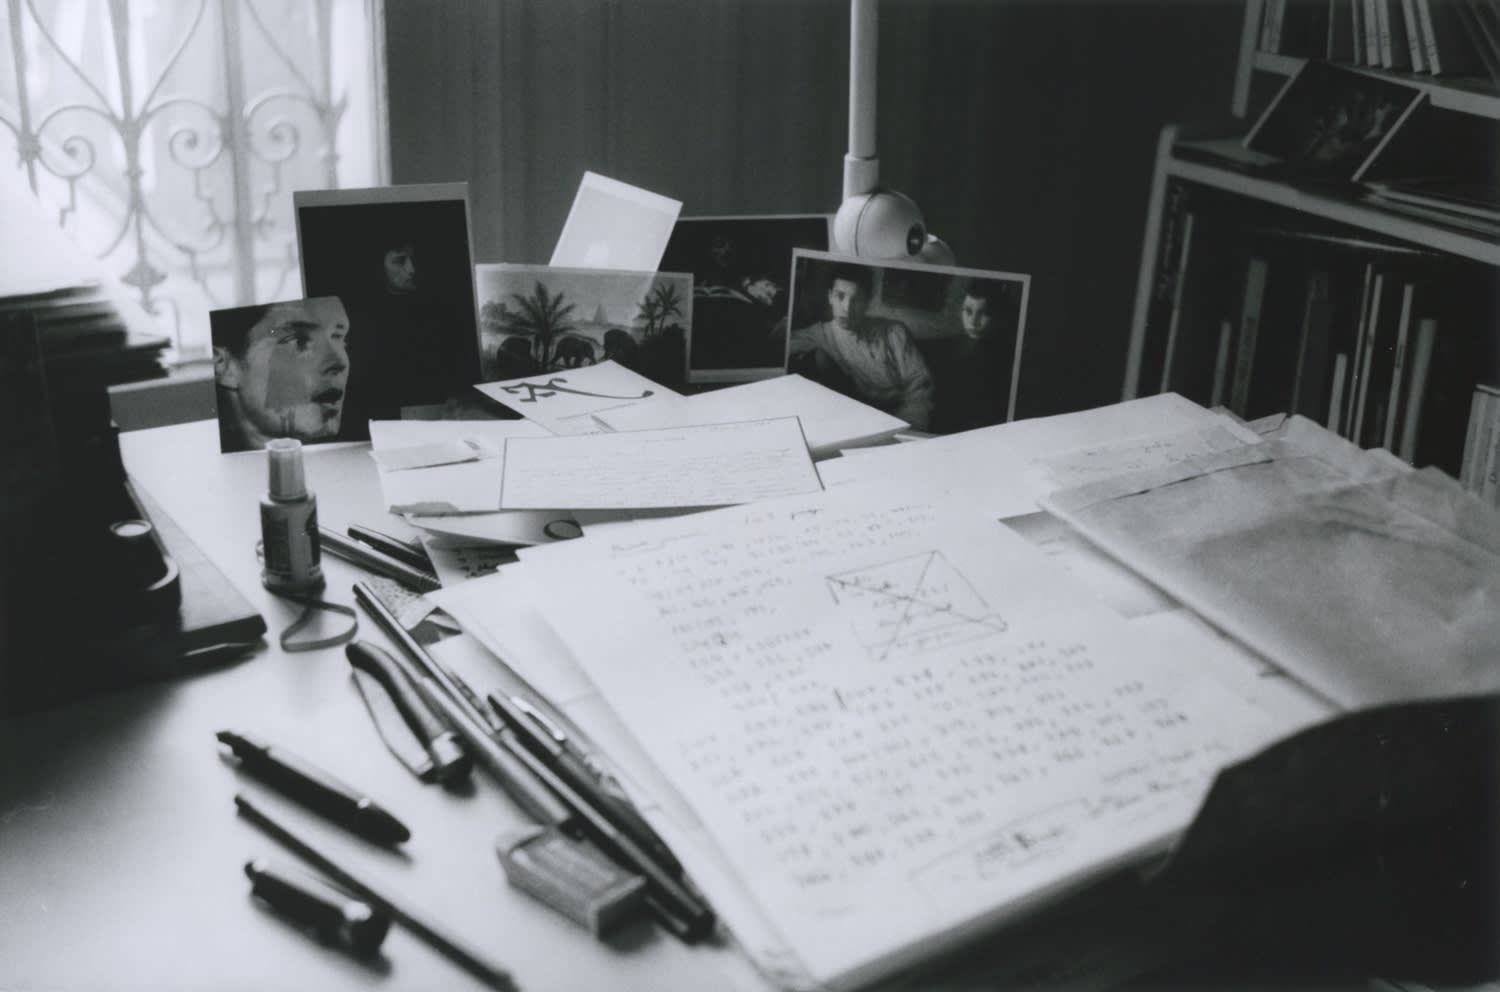 Hervé Guibert Table de travail avec manuscrit barré, rue du Moulin-Vert Tirage gélatino-argentique d'époque 15 x 22,6 cm Dim. papier: 23,7 x 30,2 cm